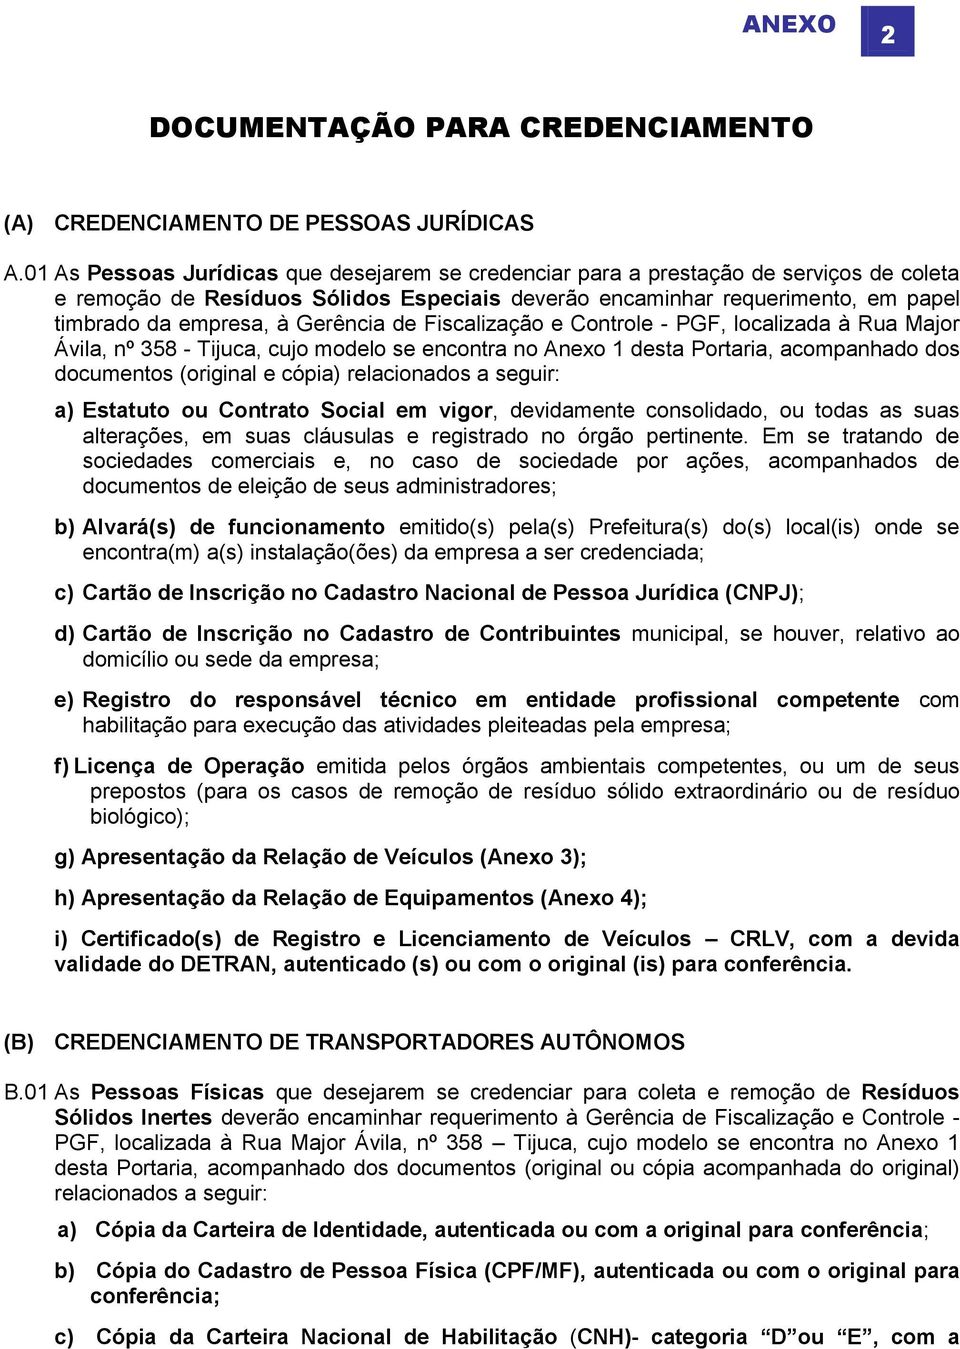 Gerência de Fiscalização e Controle - PGF, localizada à Rua Major Ávila, nº 358 - Tijuca, cujo modelo se encontra no Anexo 1 desta Portaria, acompanhado dos documentos (original e cópia) relacionados